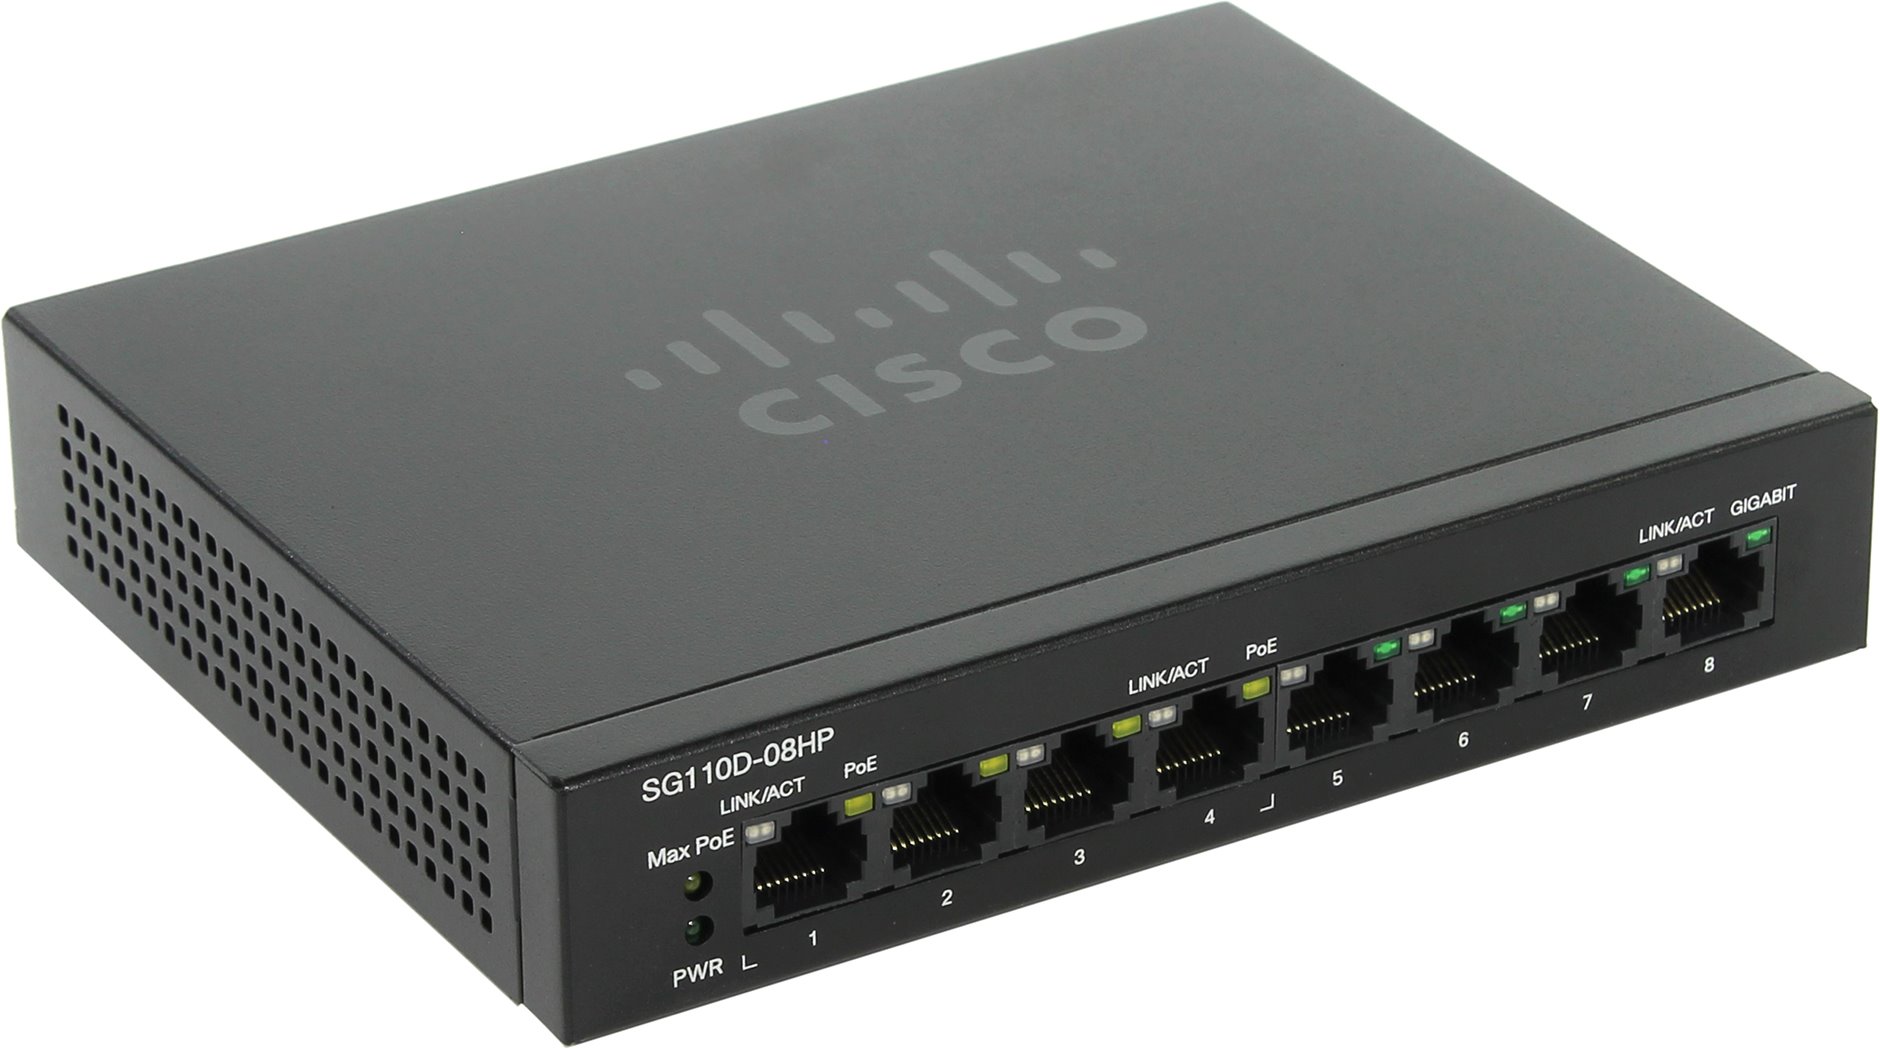 Коммутатор Cisco Small Business SG110D-08HP-EU